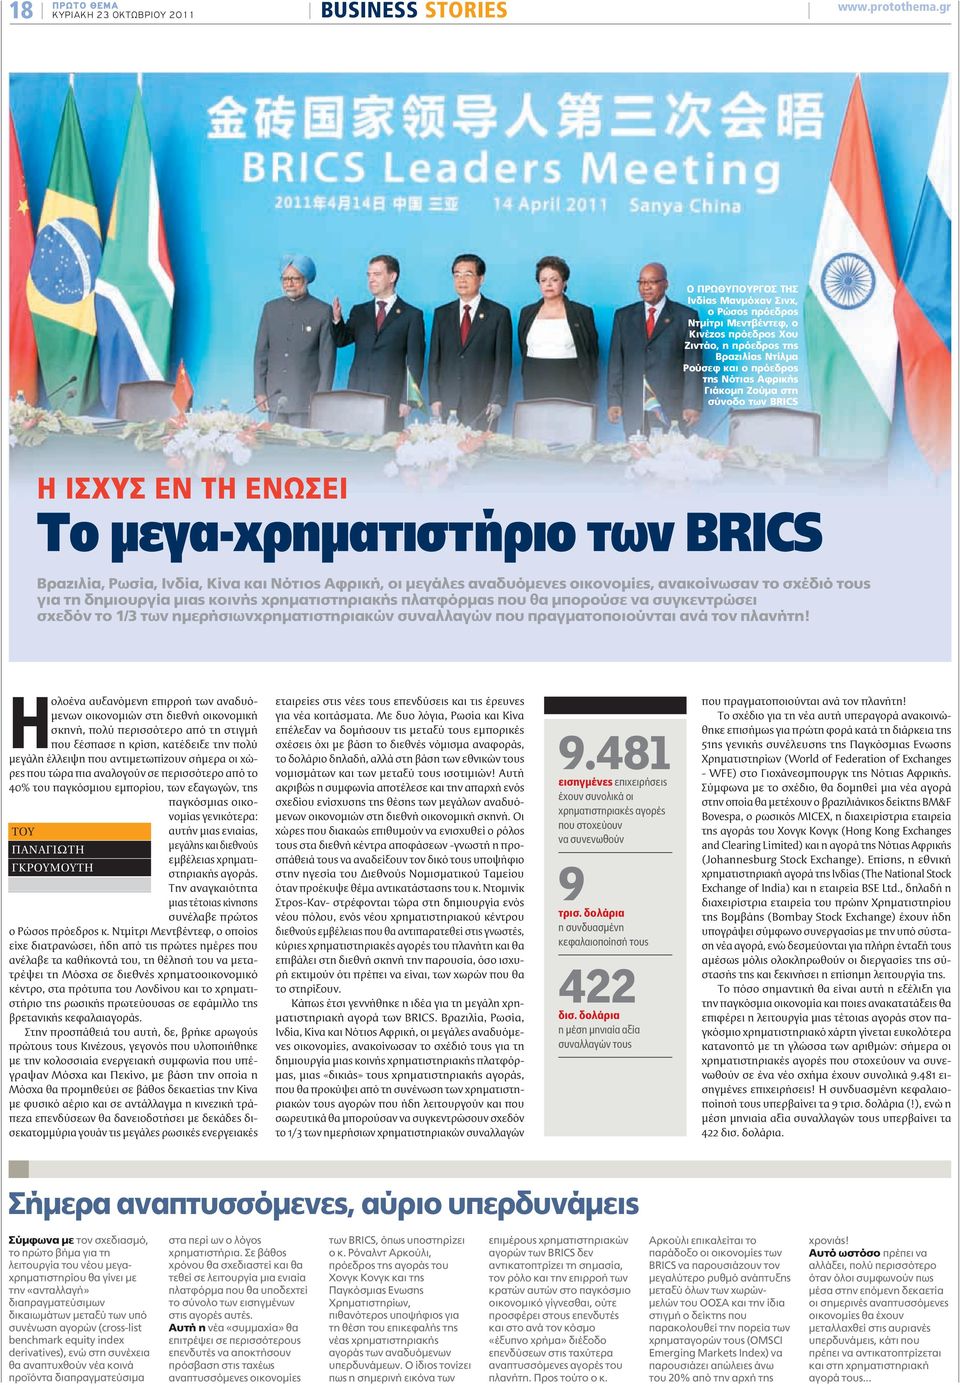 στη σύνοδο των BRICS Η ΙΣΧΥΣ ΕΝ ΤΗ ΕΝΩΣΕΙ Το μεγα-χρηματιστήριο των BRICS Βραζιλία, Ρωσία, Ινδία, Κίνα και Νότιος Αφρική, οι μεγάλες αναδυόμενες οικονομίες, ανακοίνωσαν το σχέδιό τους για τη